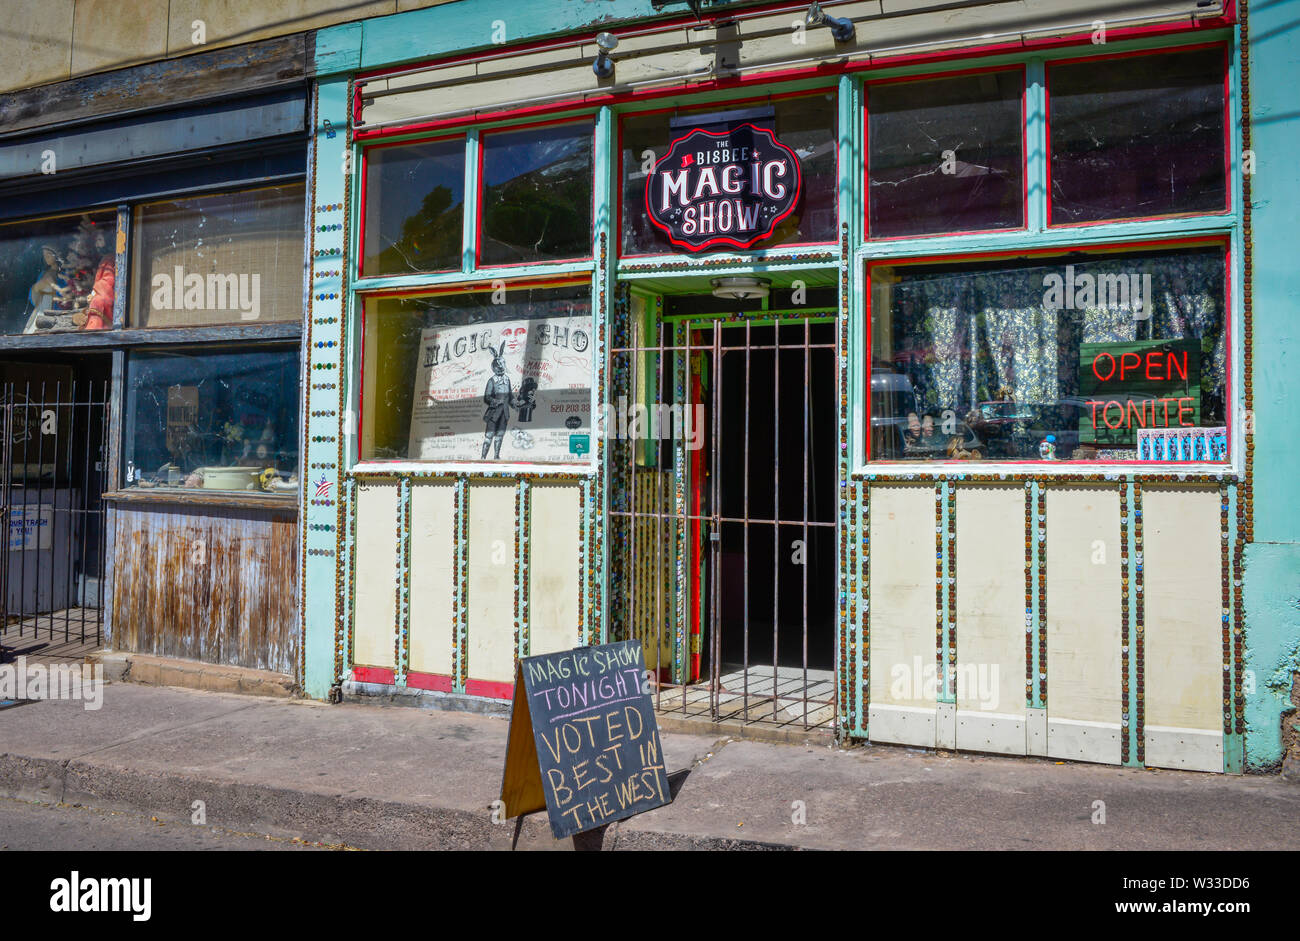 Funky, Altbau, dekoriert mit Tasten um die Storefront Windows, Häuser der Bisbee Magic Show, in der alten Minenstadt Bisbee, AZ, USA Stockfoto